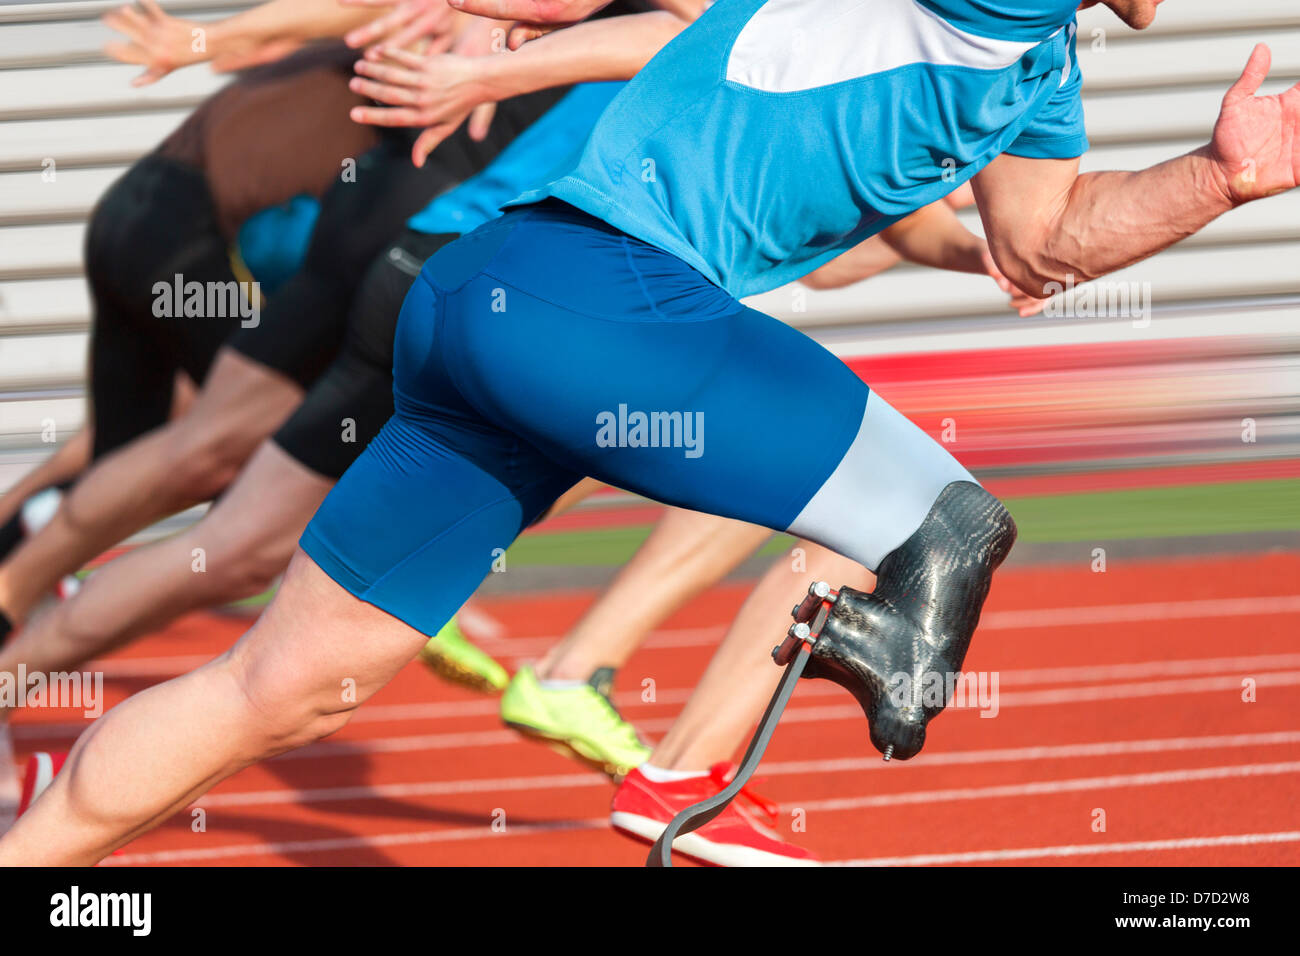 Portatori di handicap sprinter inizia a breve tracciato di gara con gli atleti senza ostacoli Foto Stock